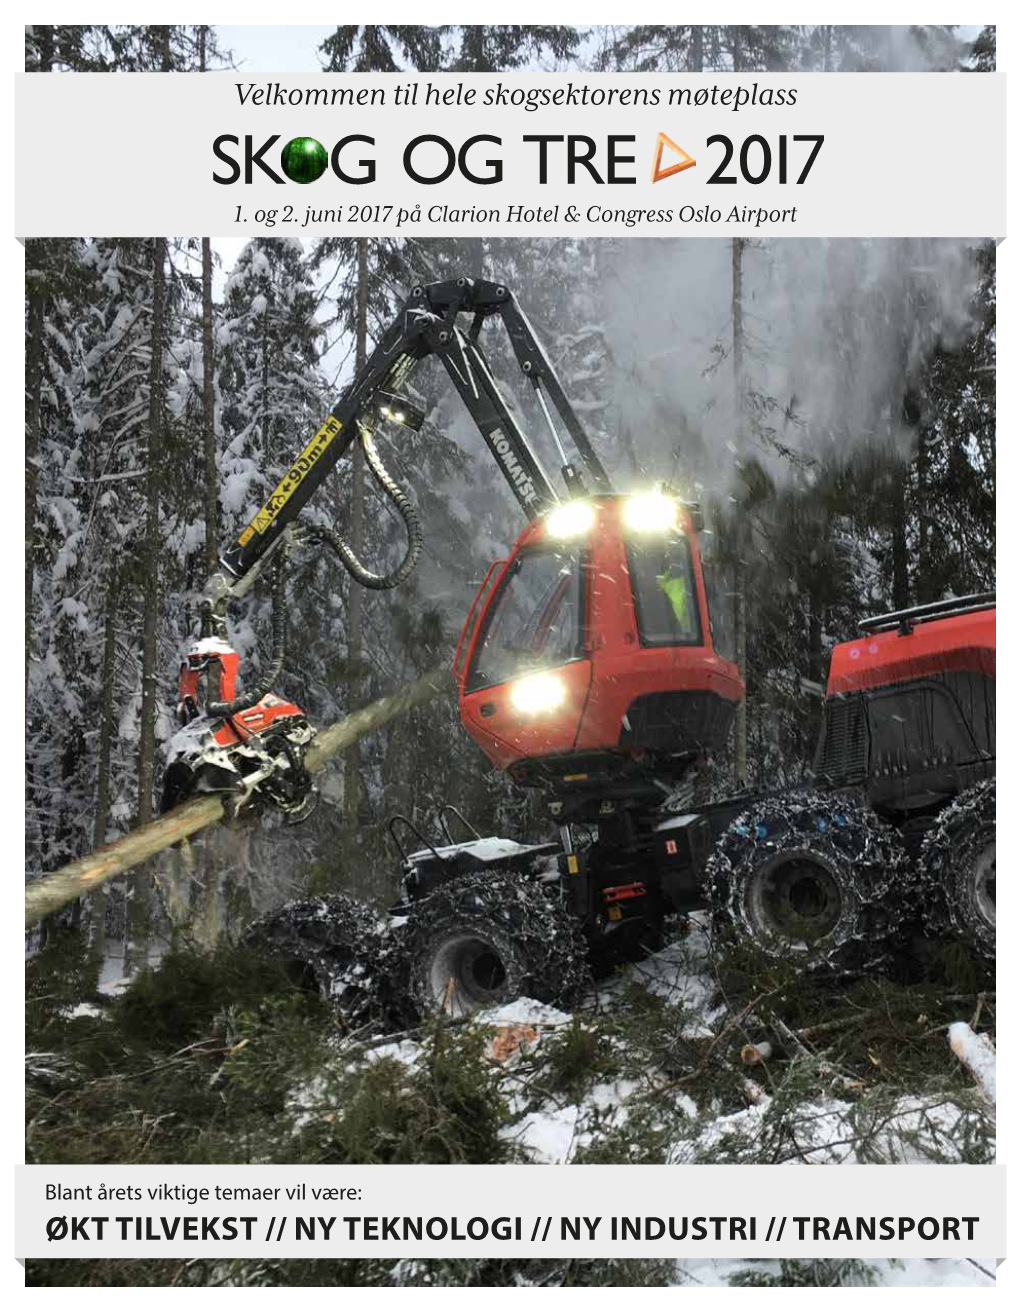 Skog Og Tre 2017 Program